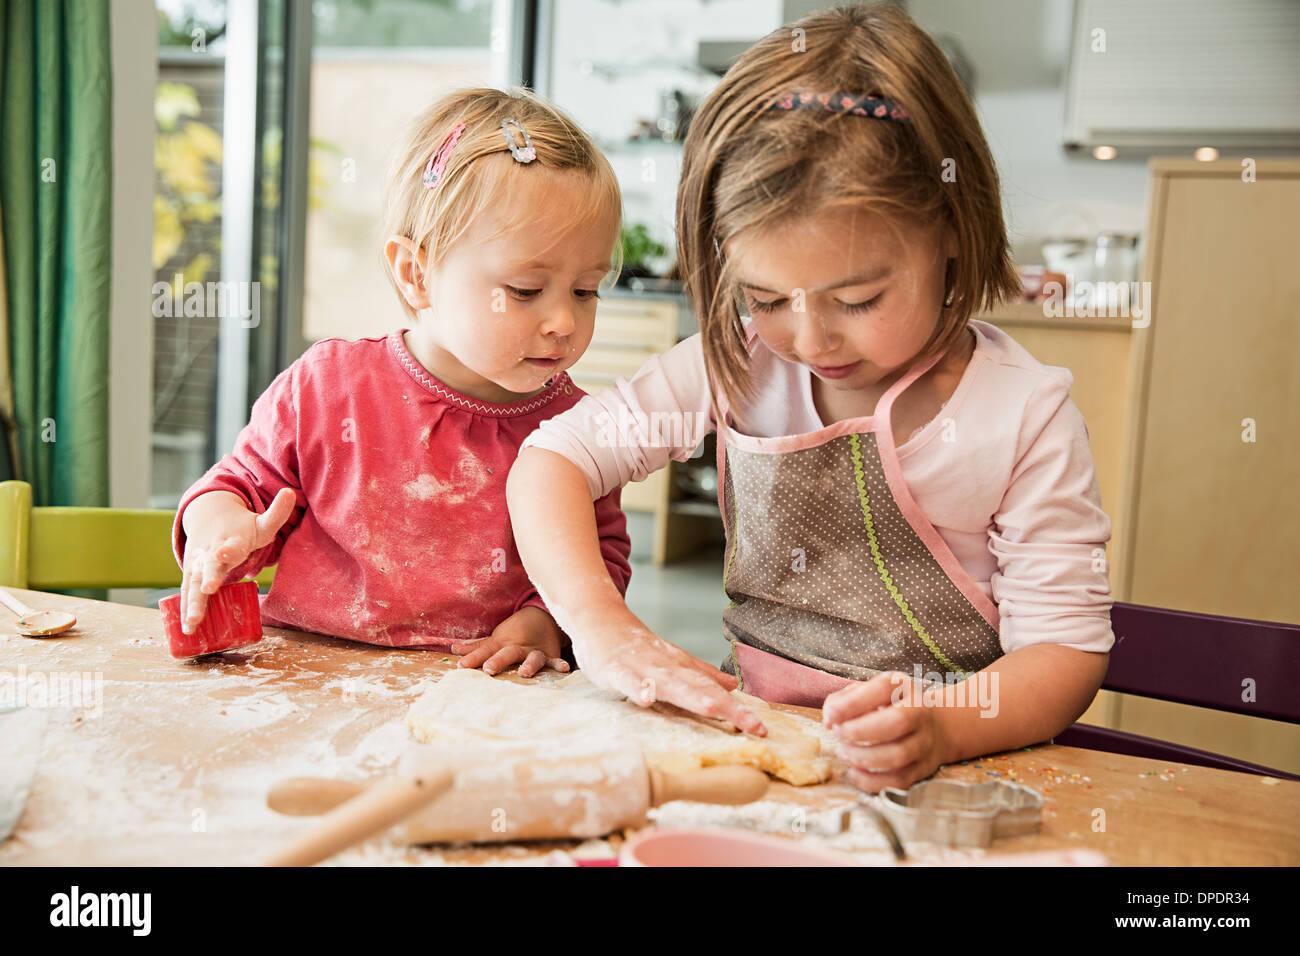 Enfants baking in kitchen Banque D'Images